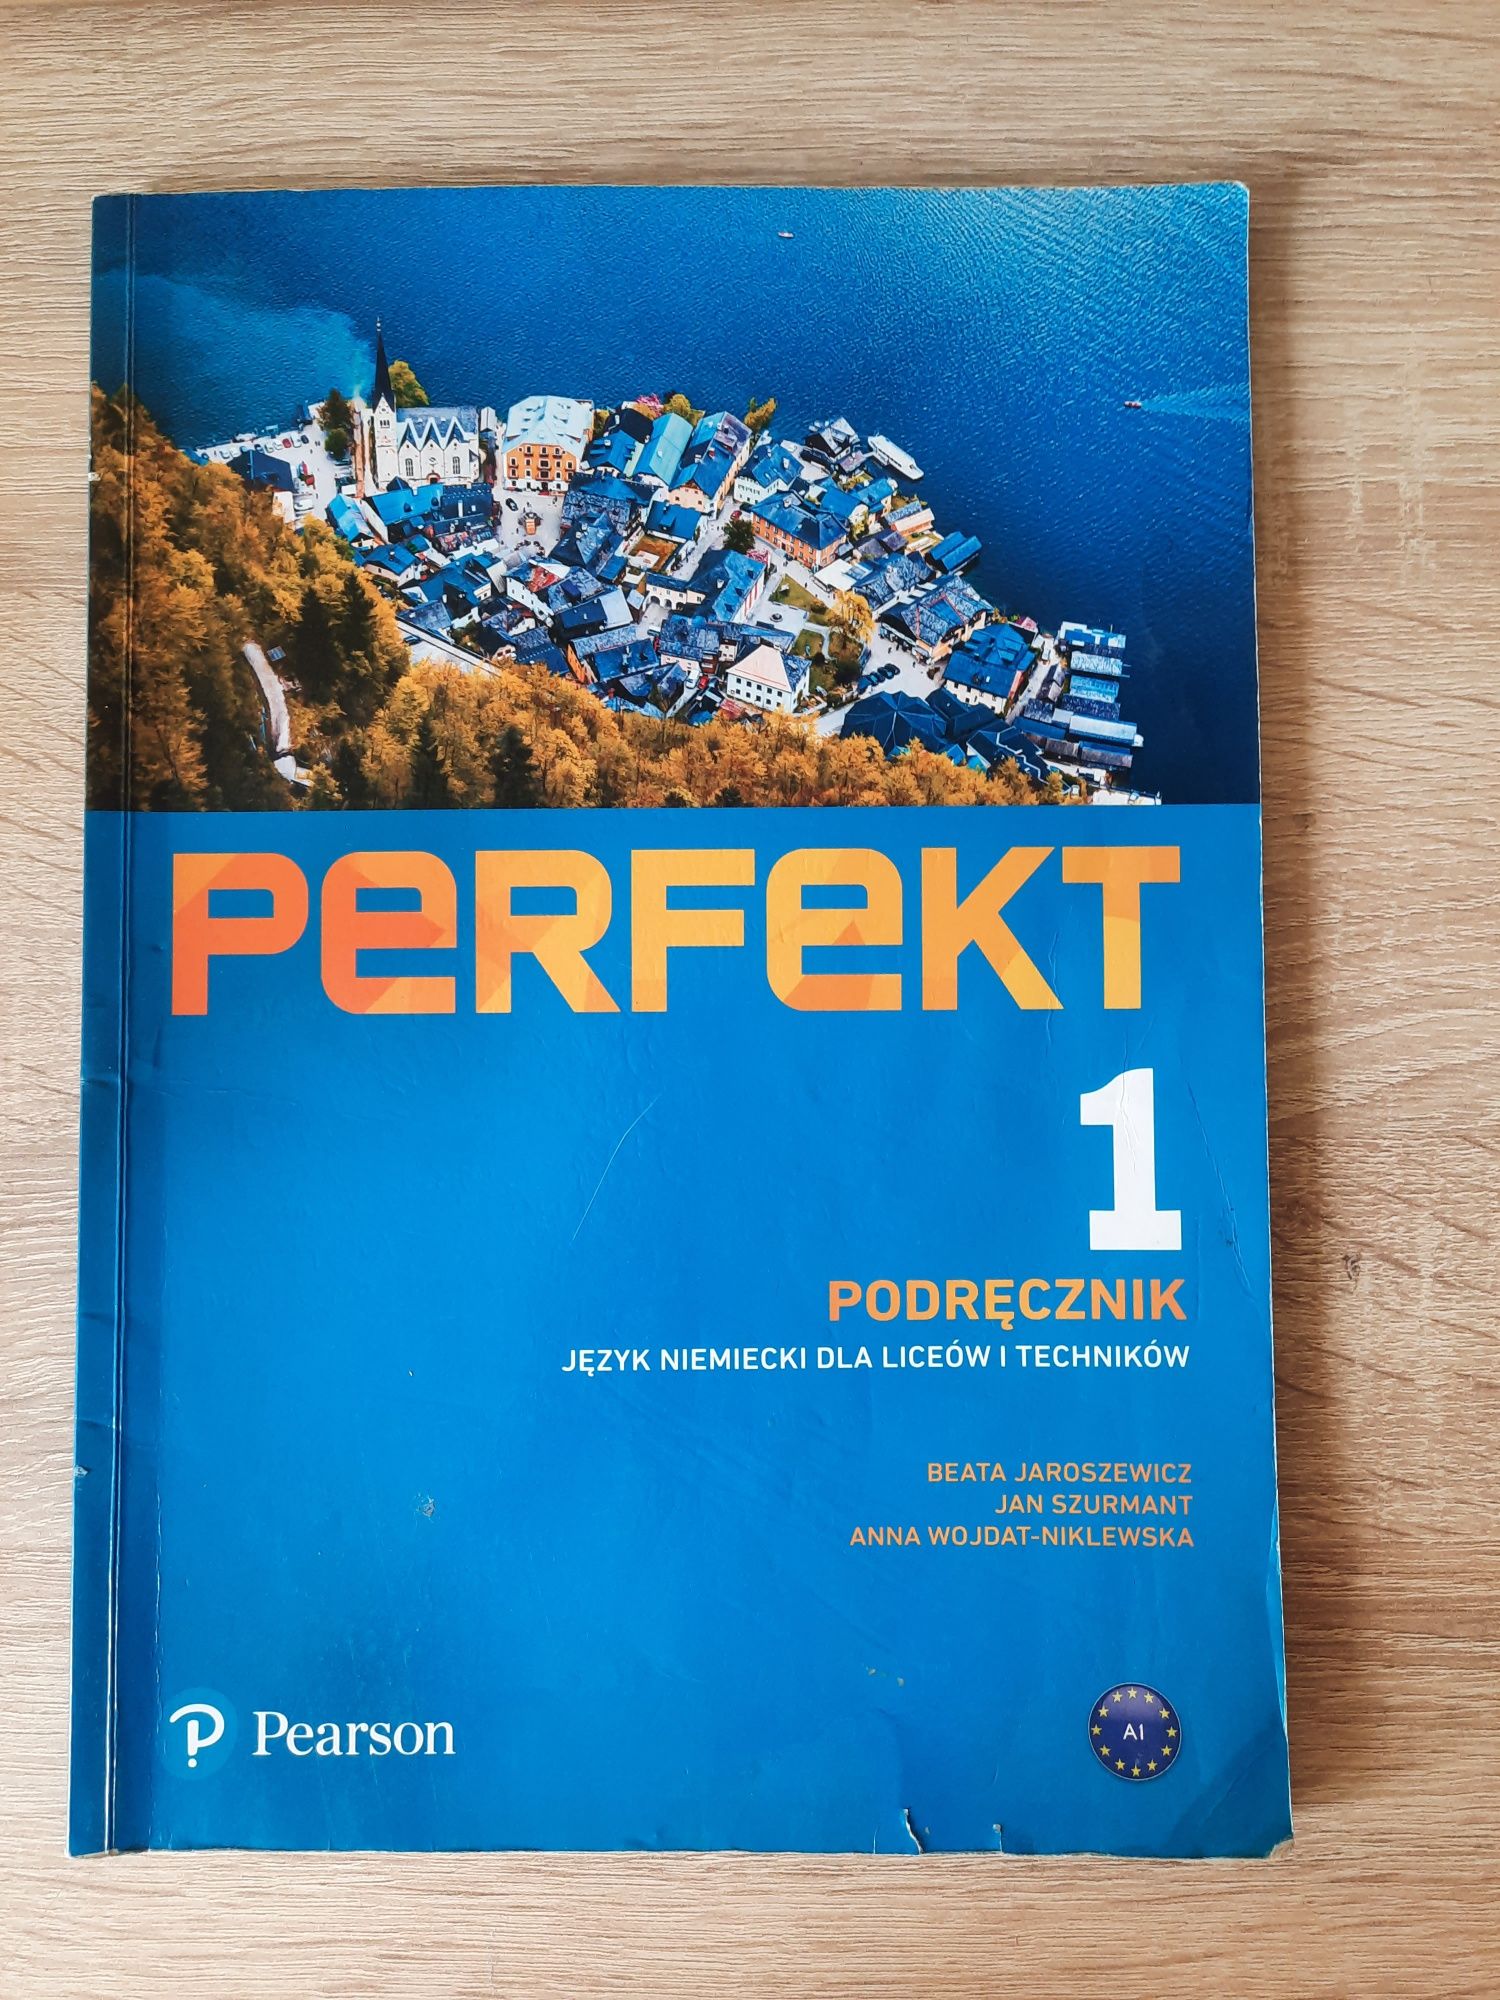 Perfekt 1 - podręcznik do j. niemieckiego,liceum